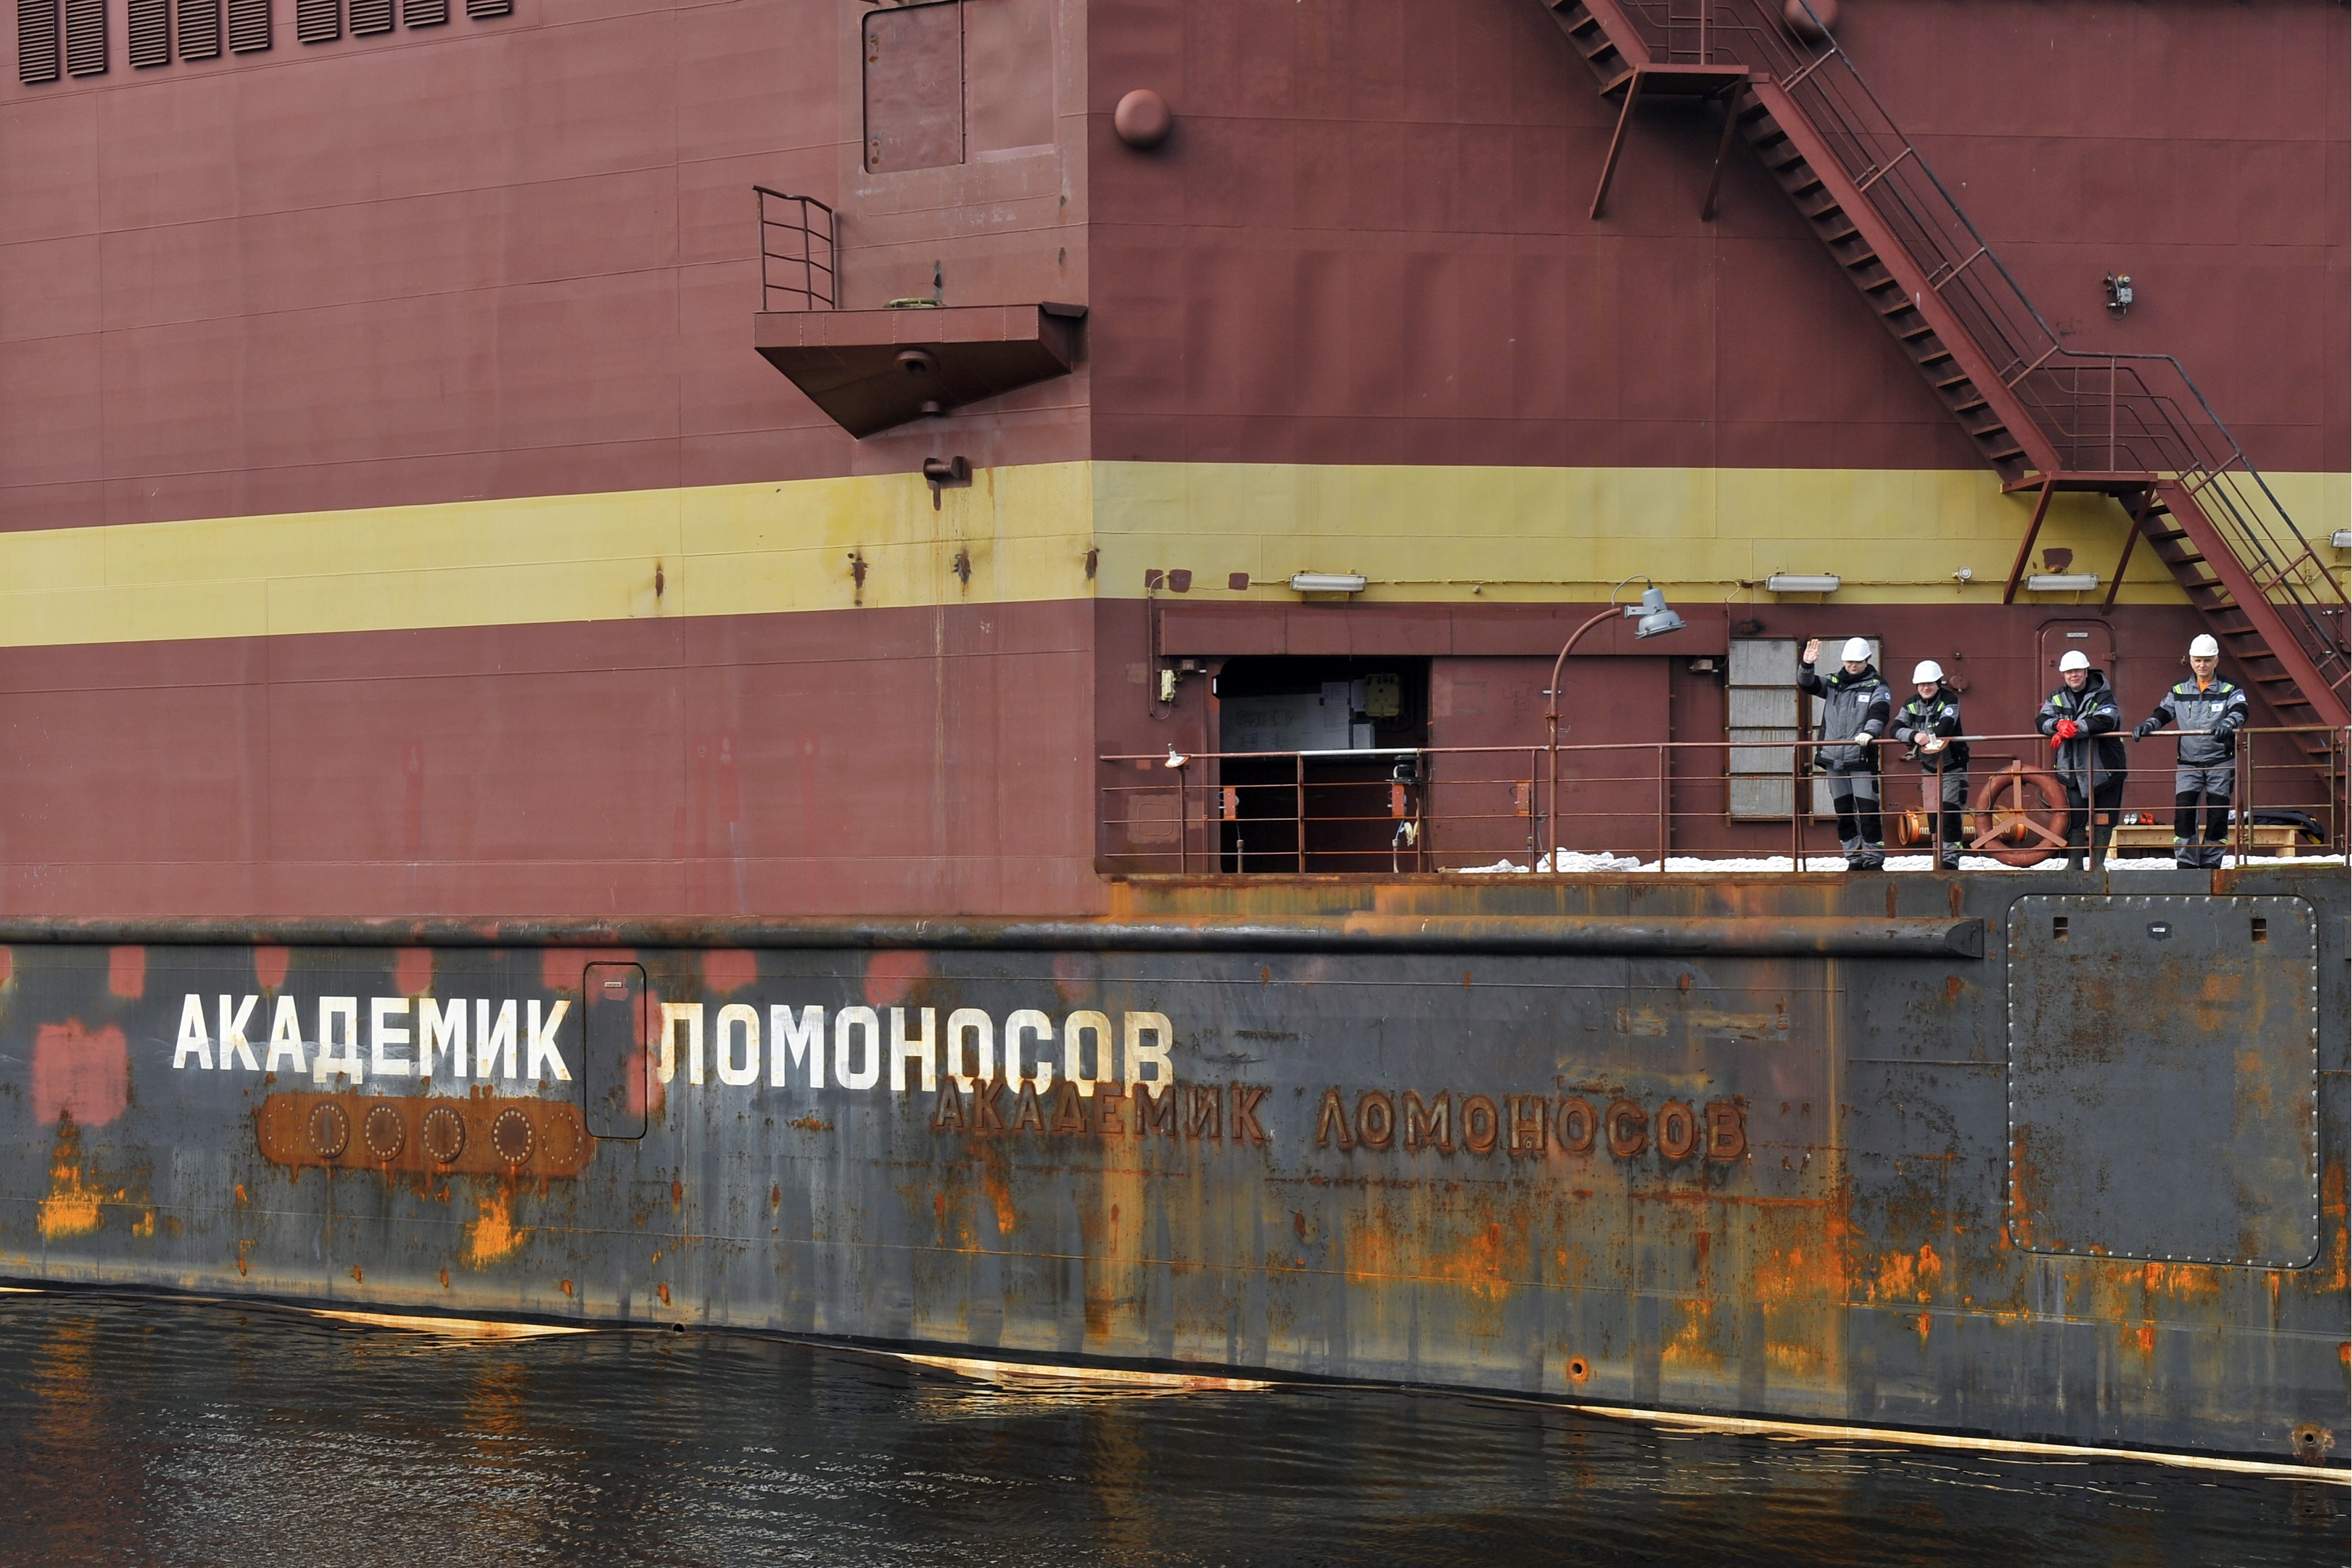 Rusia trimite în larg controversata navă numită ”Cernobîl plutitor”. GALERIE FOTO - Imaginea 8